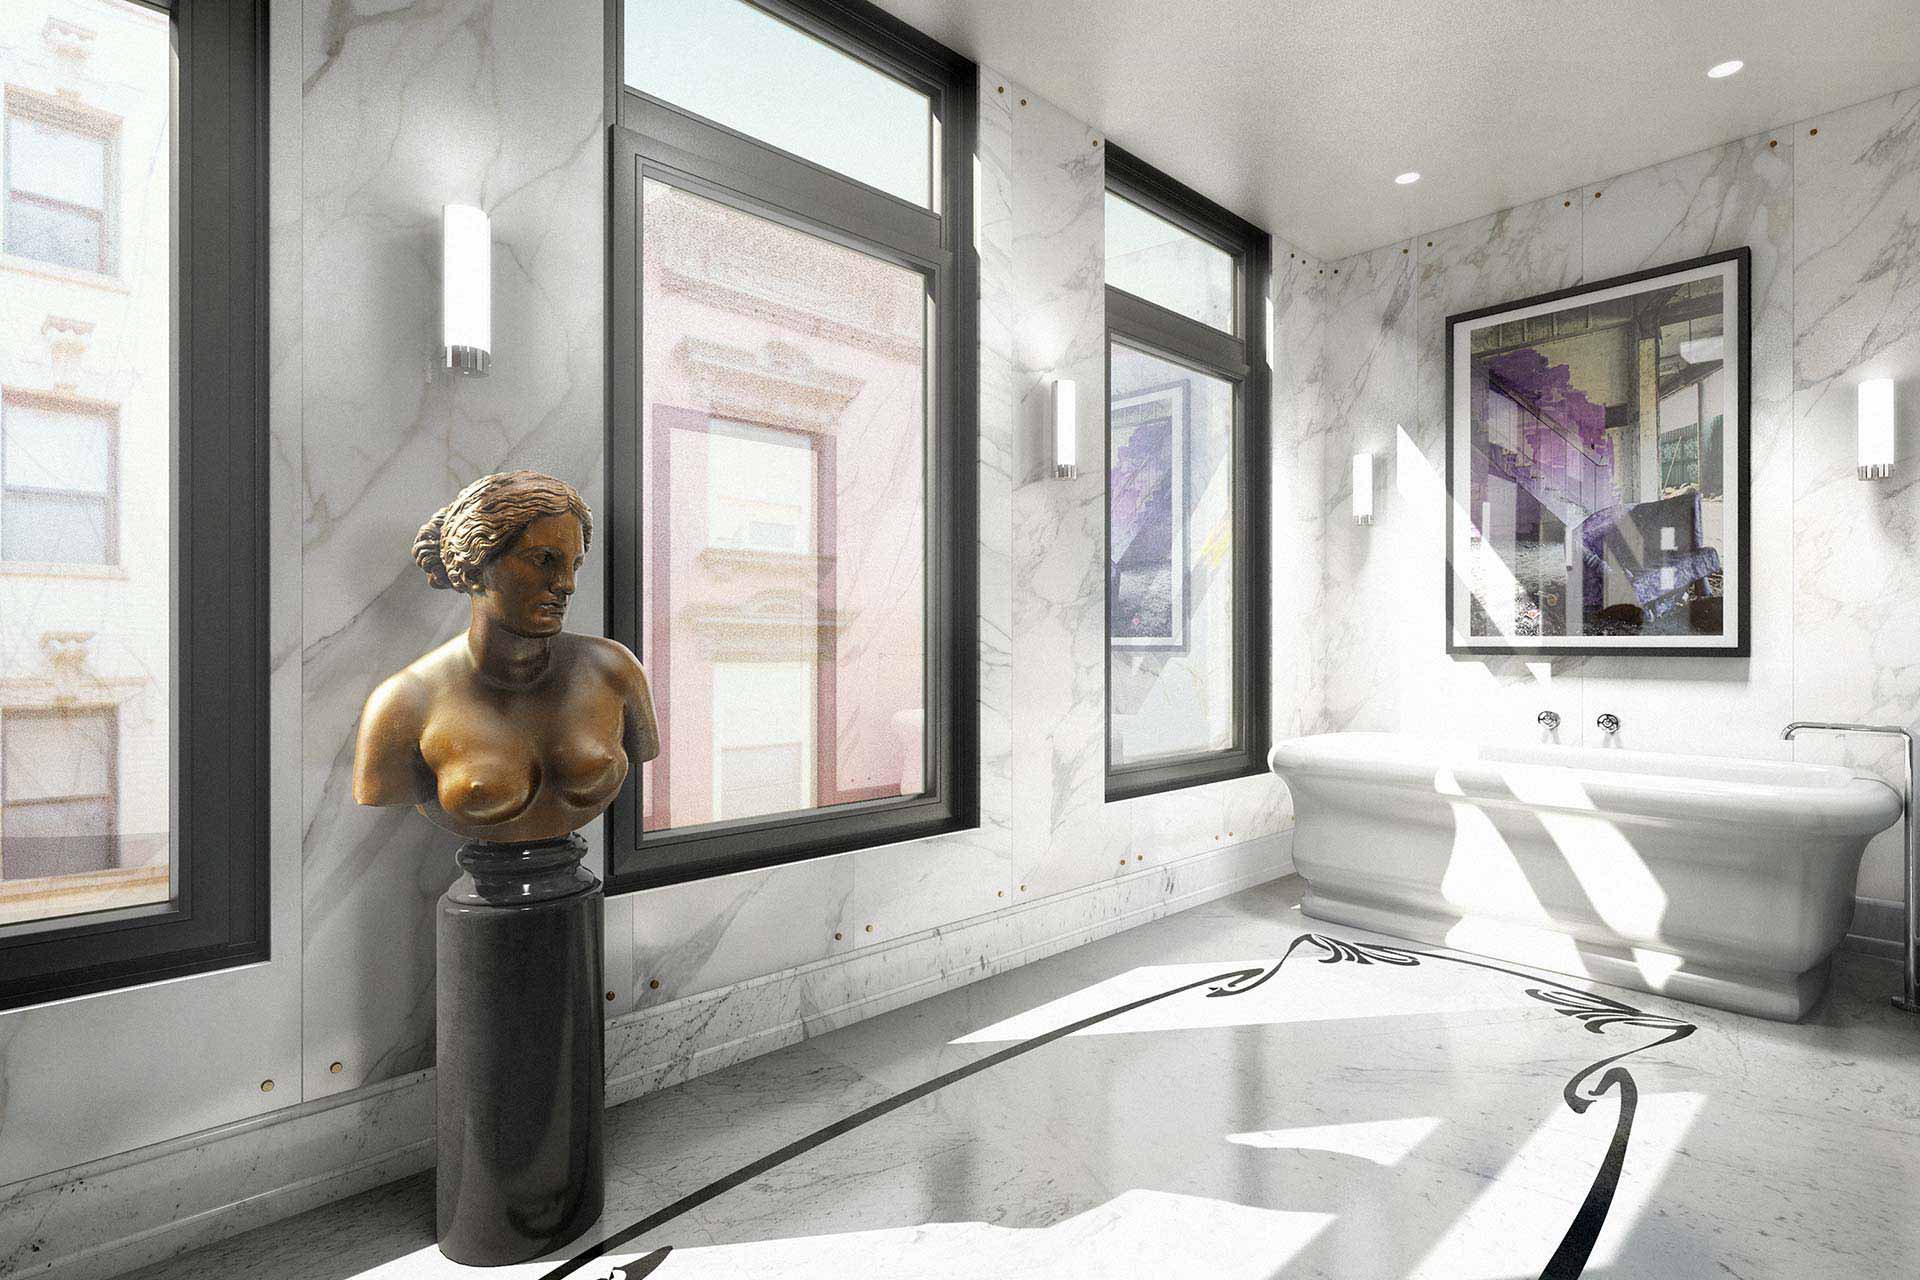 Master bathroom rendering with bronze statue